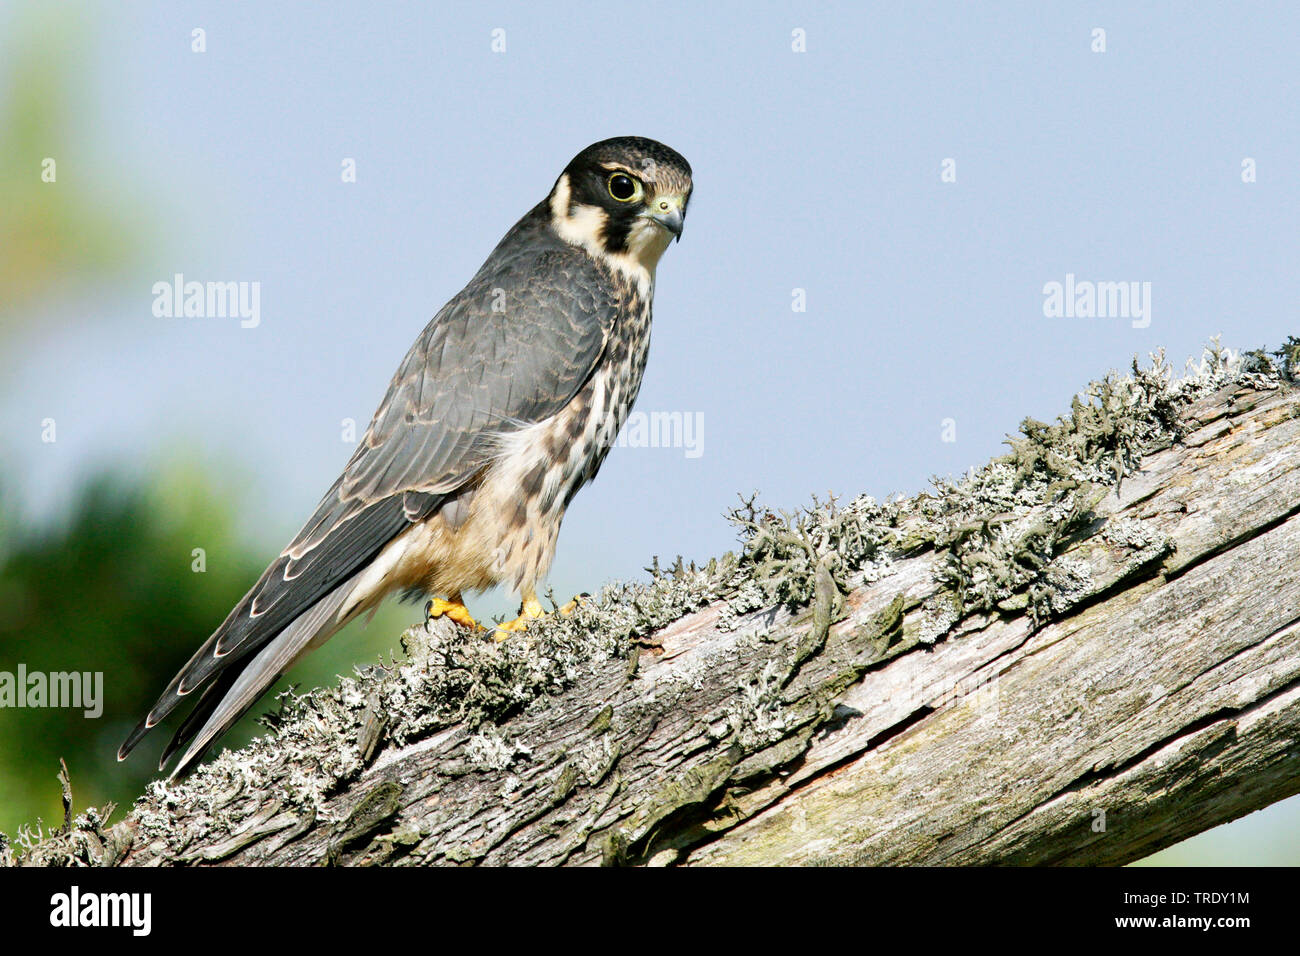 Le nord de l'hobby (Falco subbuteo), juvénile assis sur un arbre, en Finlande, Hanko Banque D'Images